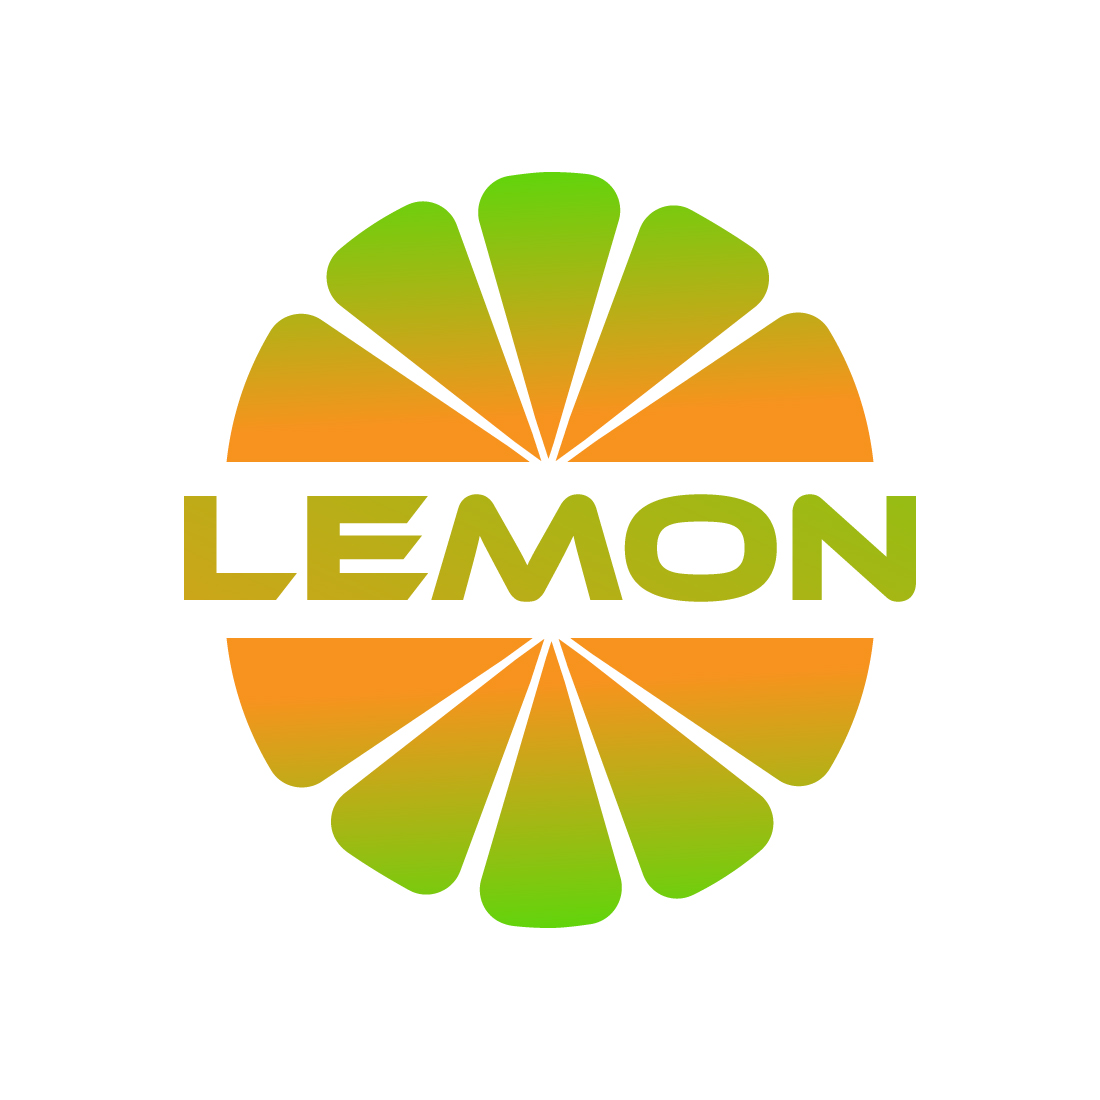 Lemon logo design vector images lemon Fresh Fruit logo template icon design cover image.